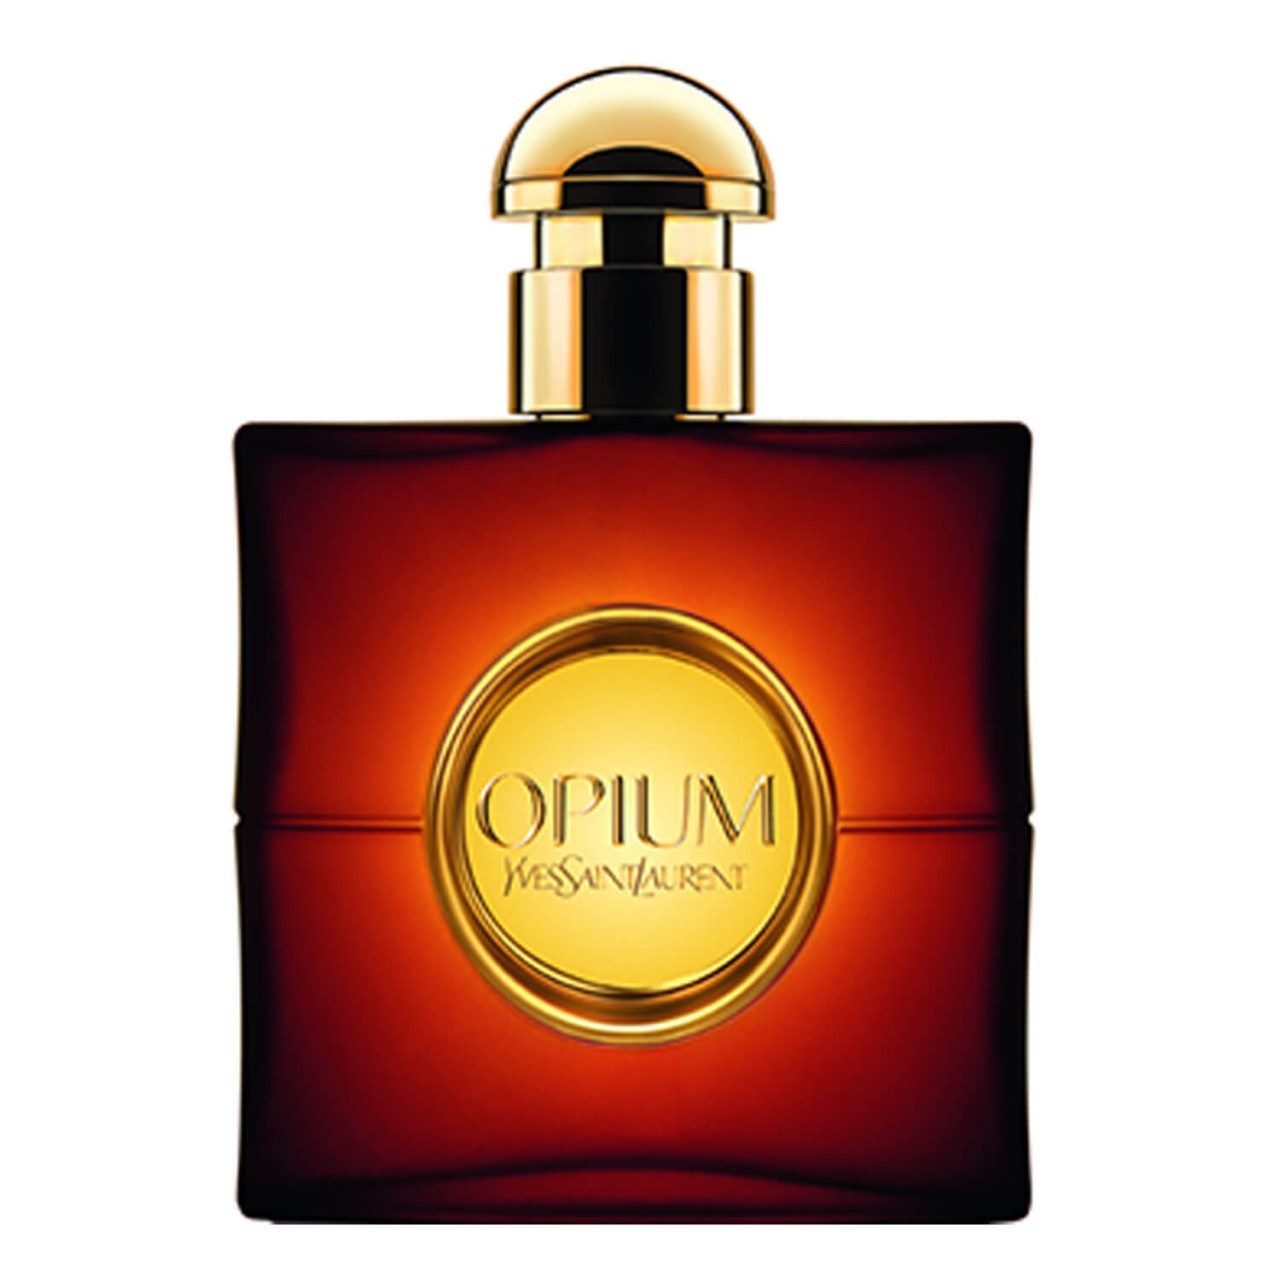 Opium - Eau de Toilette von Yves Saint Laurent